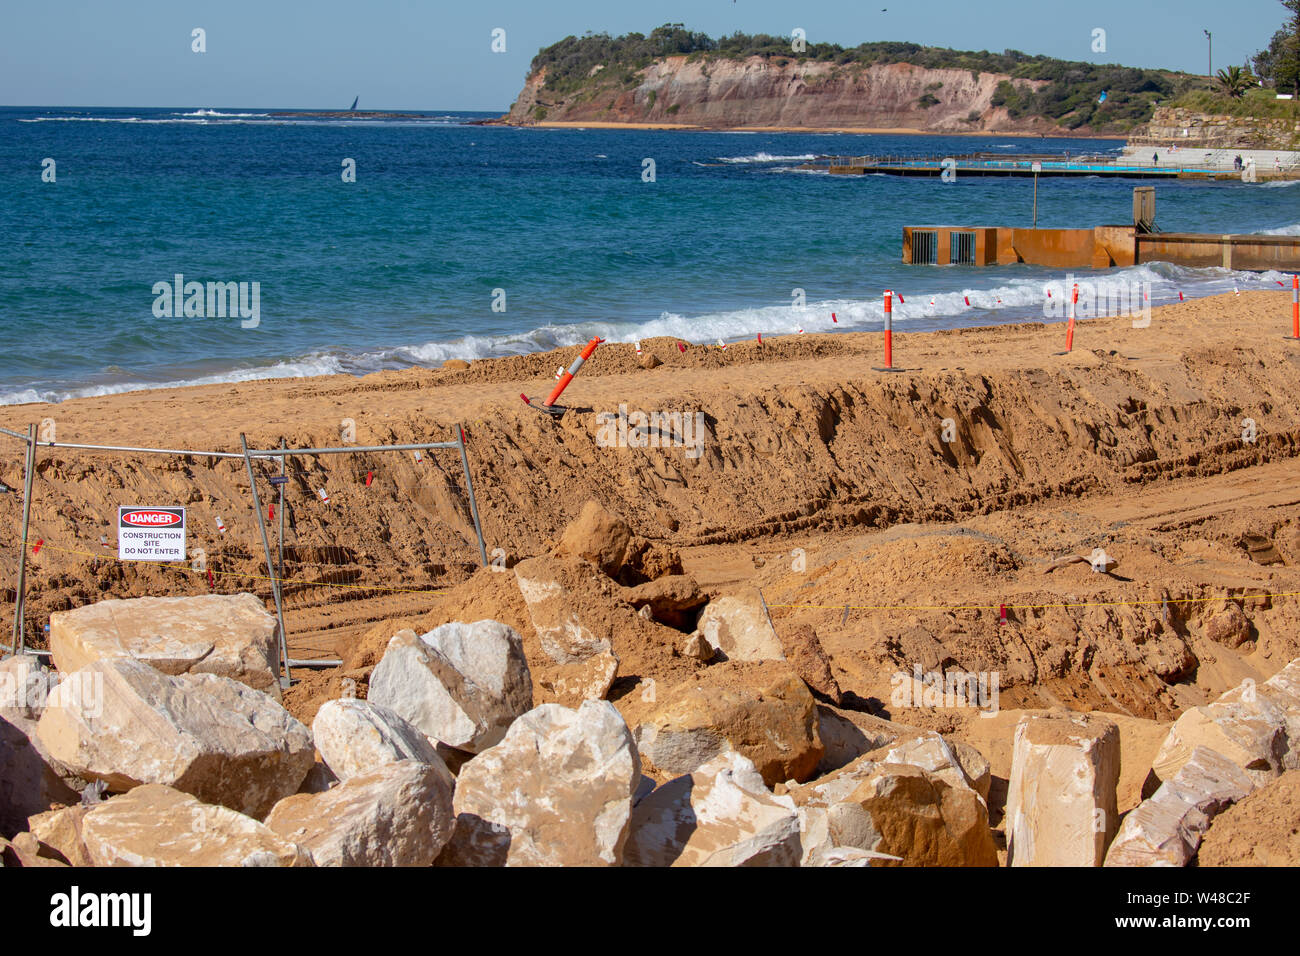 Bau von Verteidigungsanlagen Meer am Strand in collaroy wo König Gezeiten zuvor Häuser und Eigentum beschädigt haben, der Anstieg des Meeresspiegels Sydney Australien Stockfoto